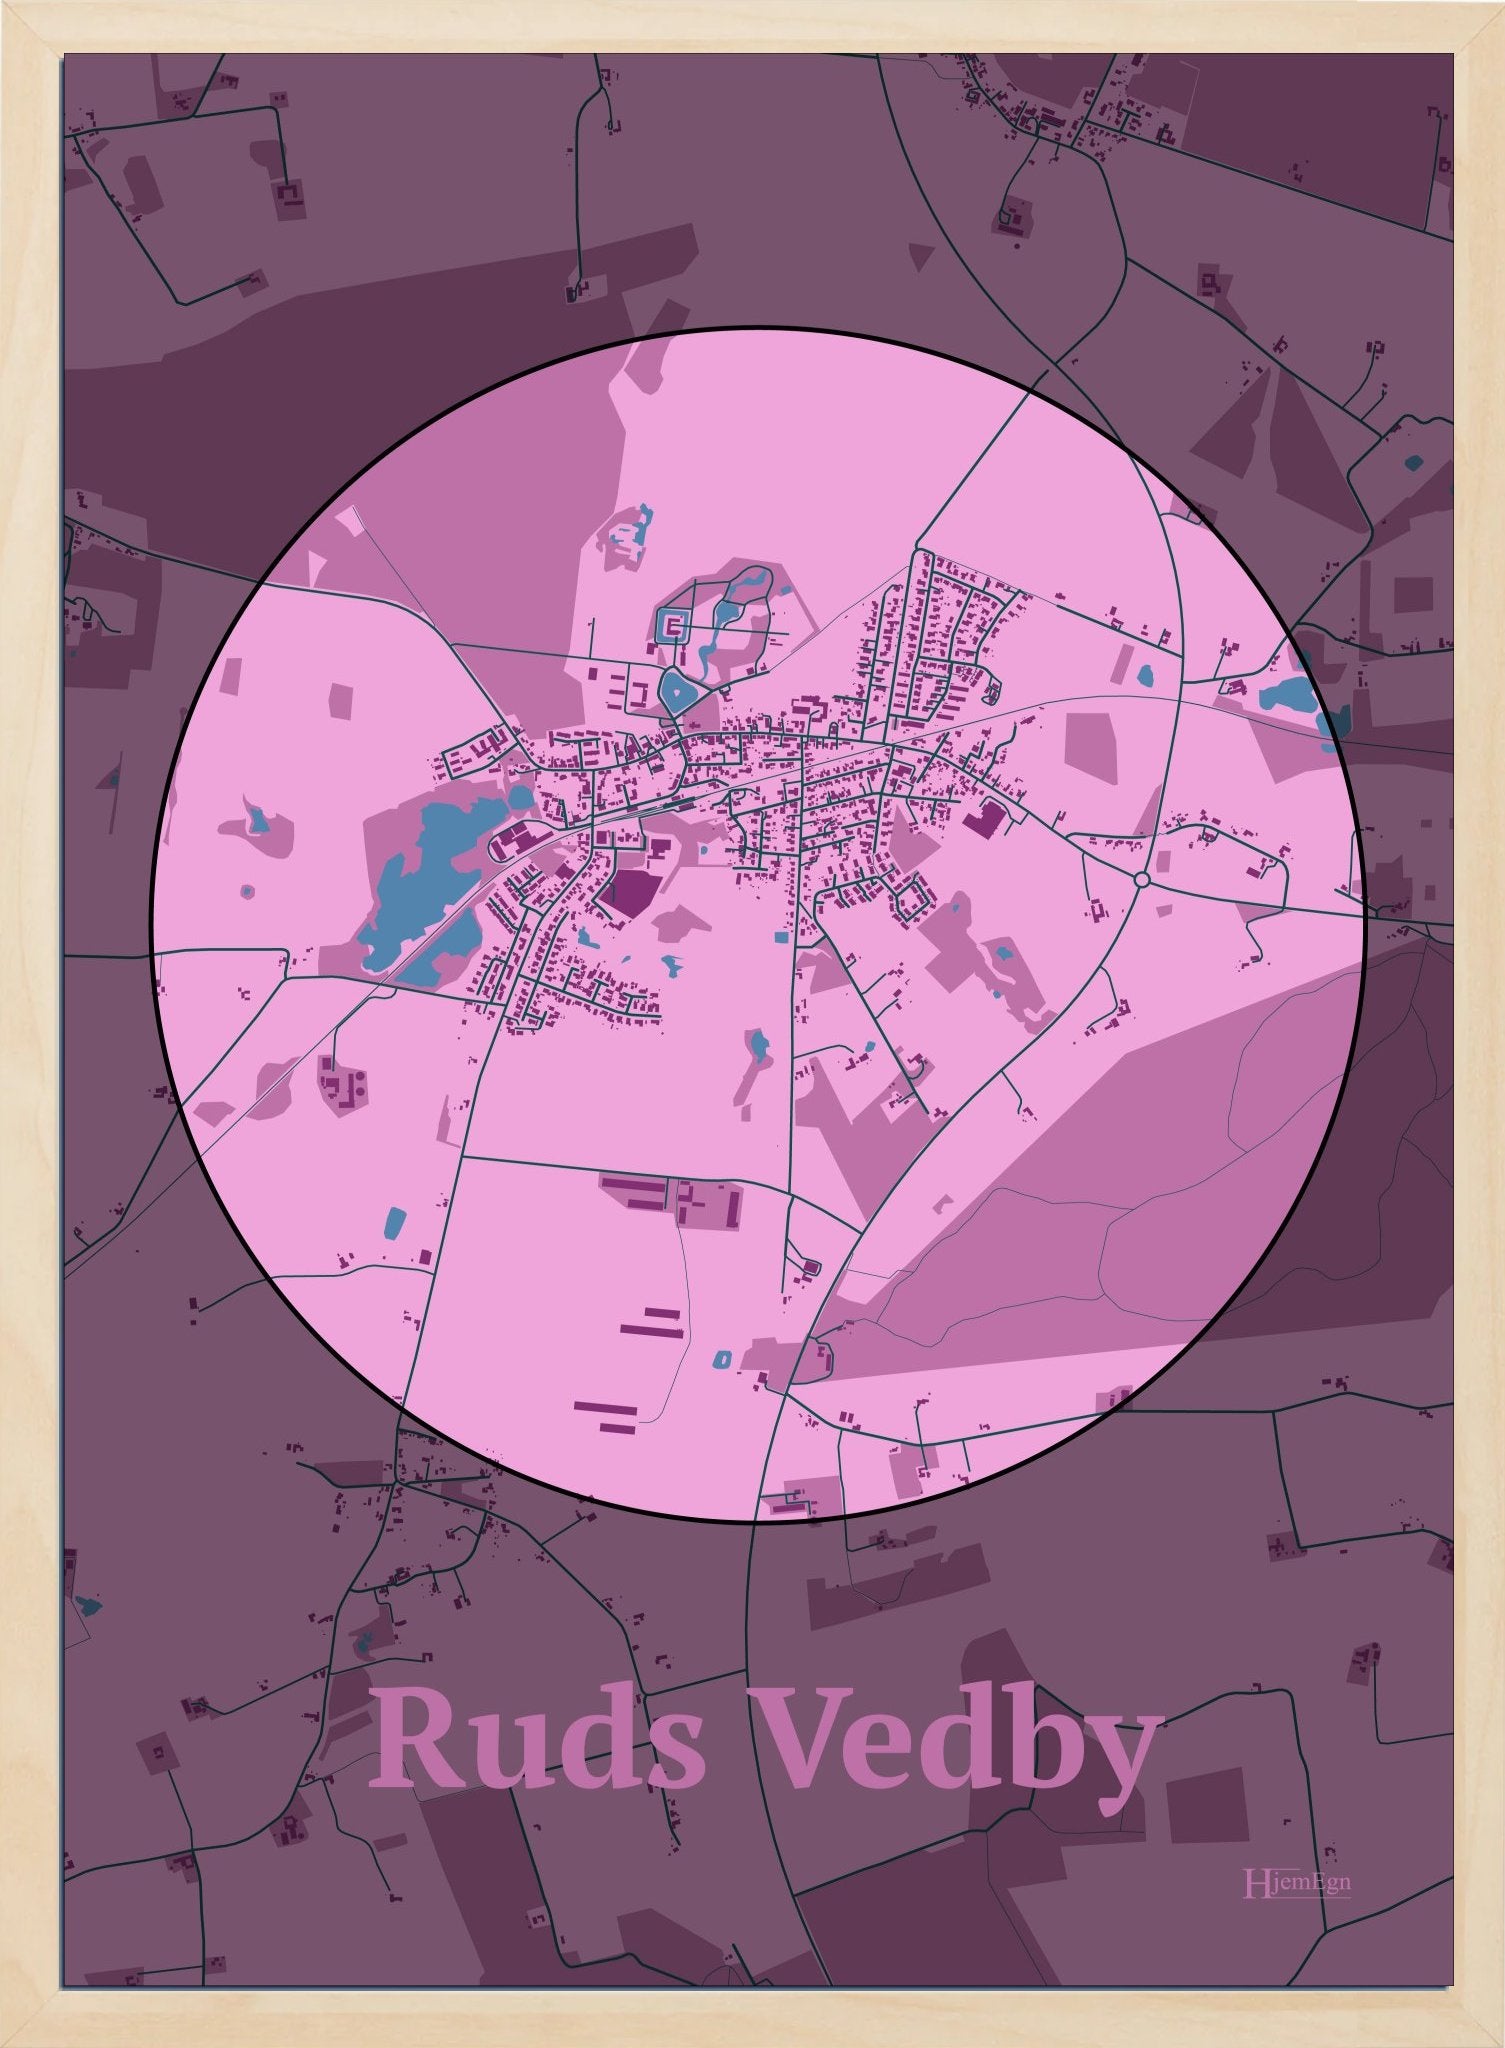 Ruds Vedby plakat i farve pastel rød og HjemEgn.dk design centrum. Design bykort for Ruds Vedby